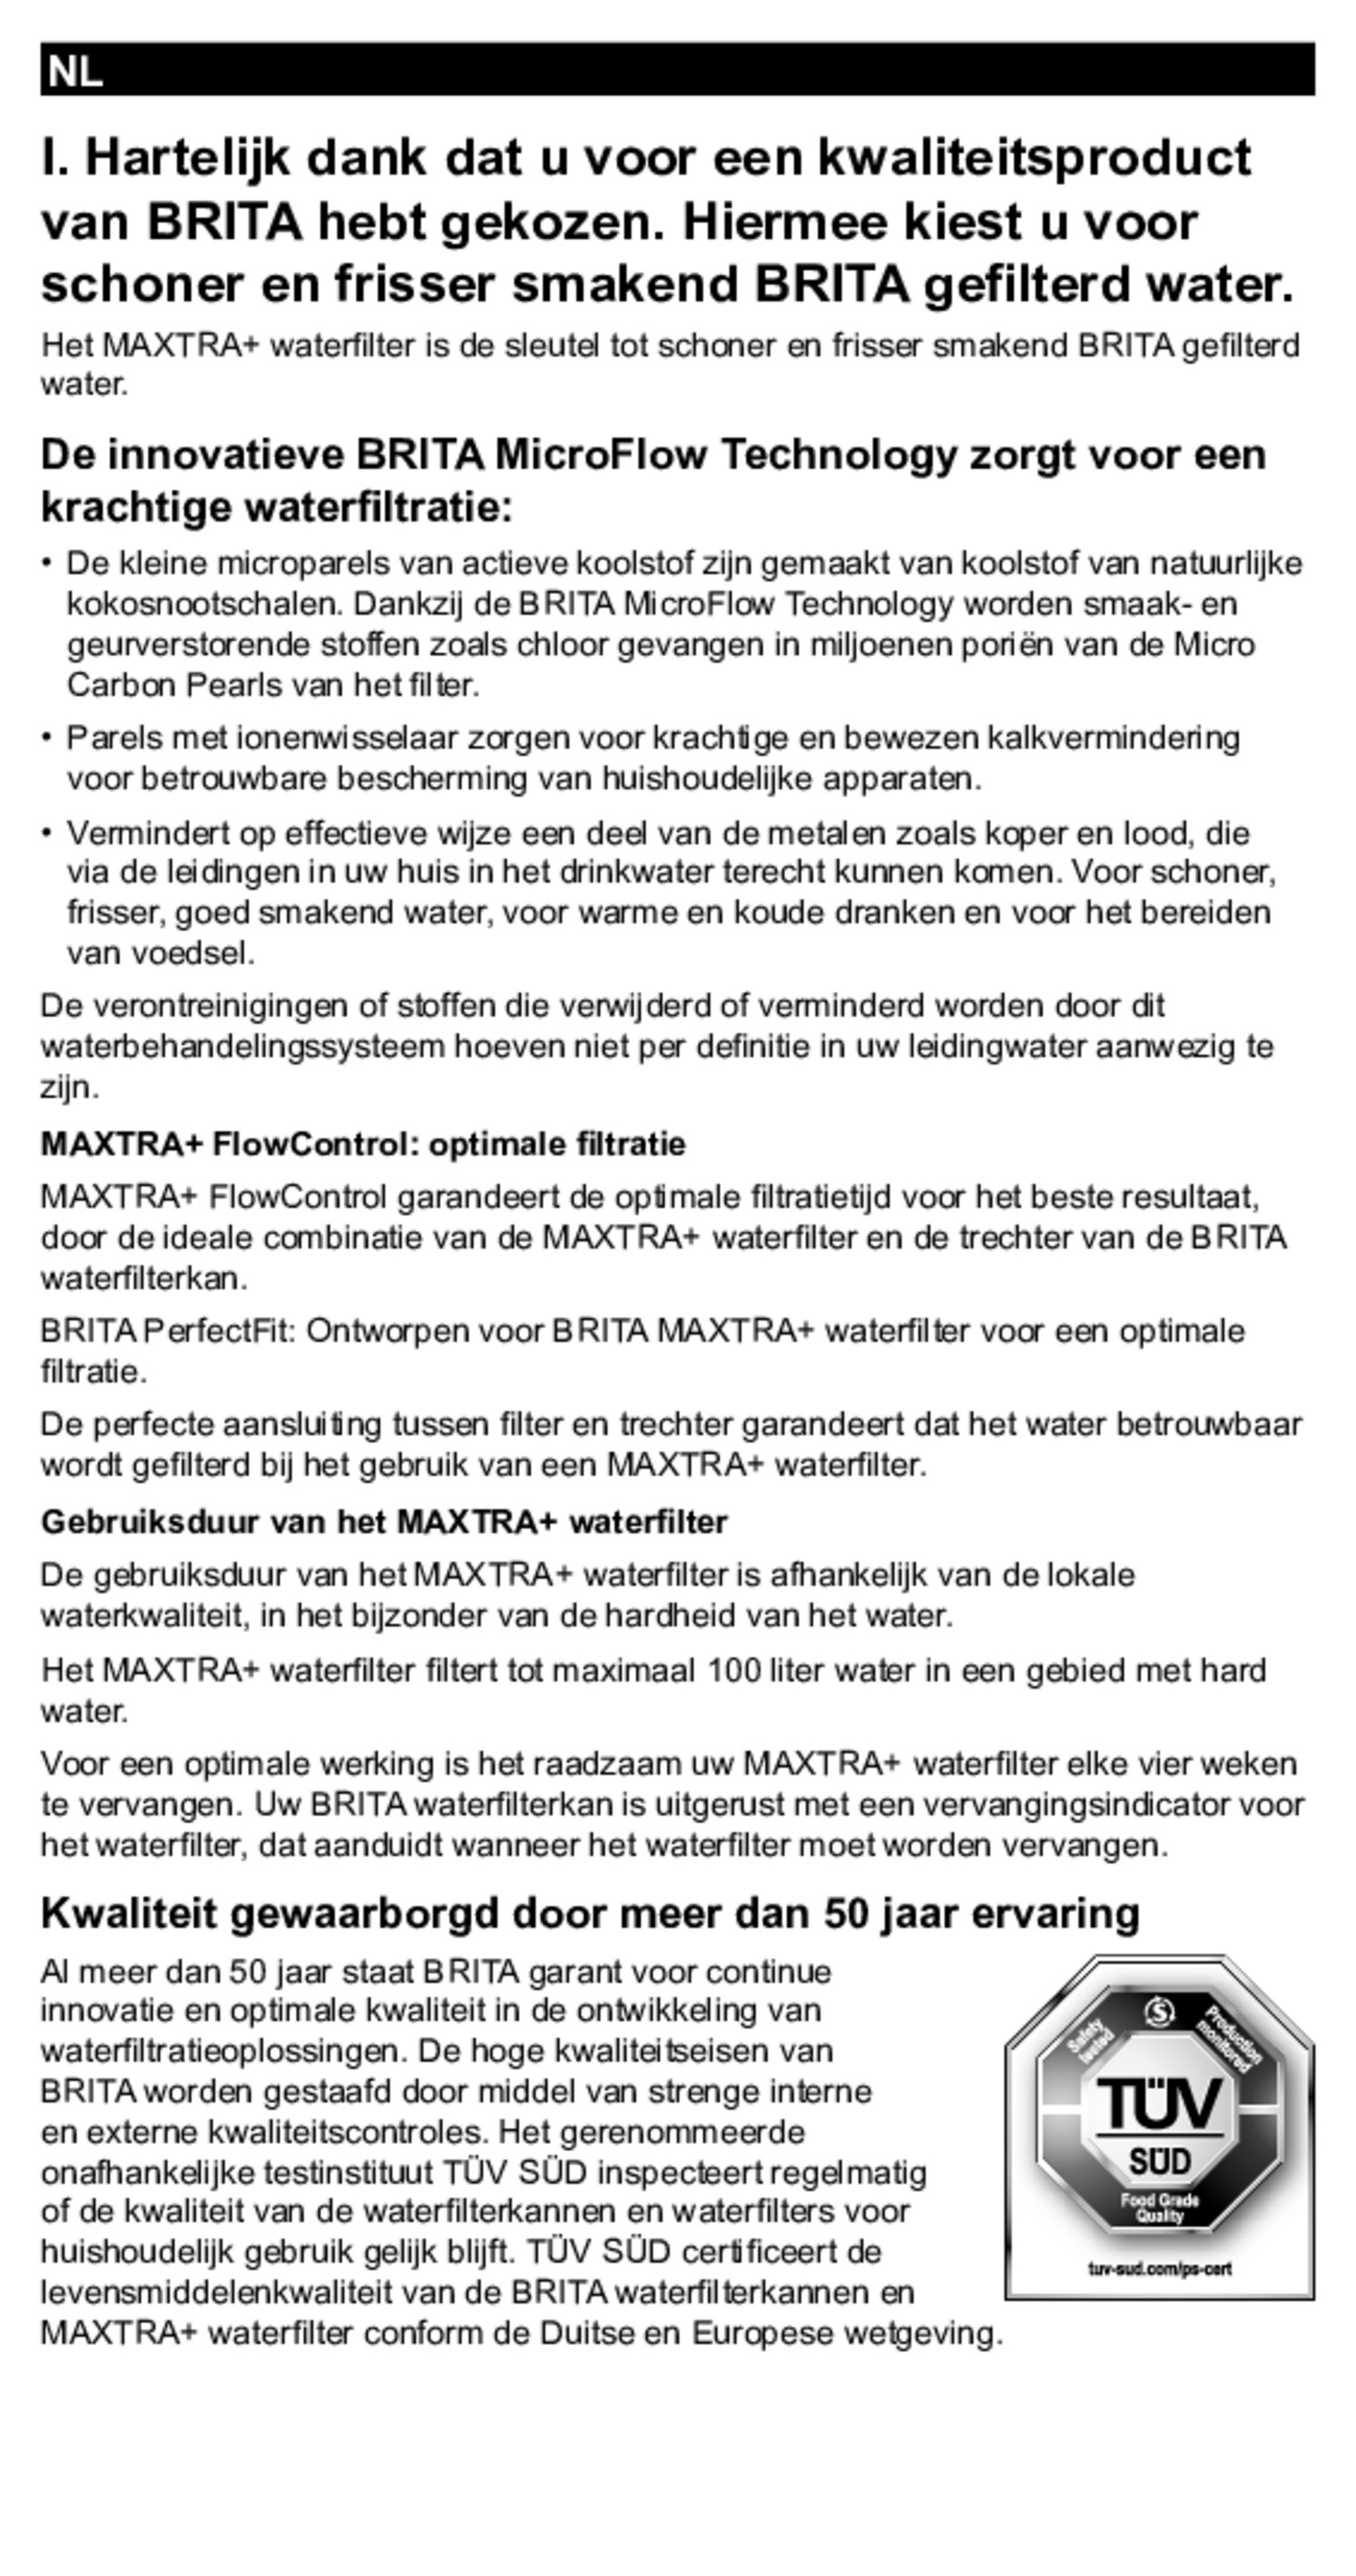 Marella Waterfilterkan Wit + 12 Maxtra Filterpatronen afbeelding van document #20, gebruiksaanwijzing